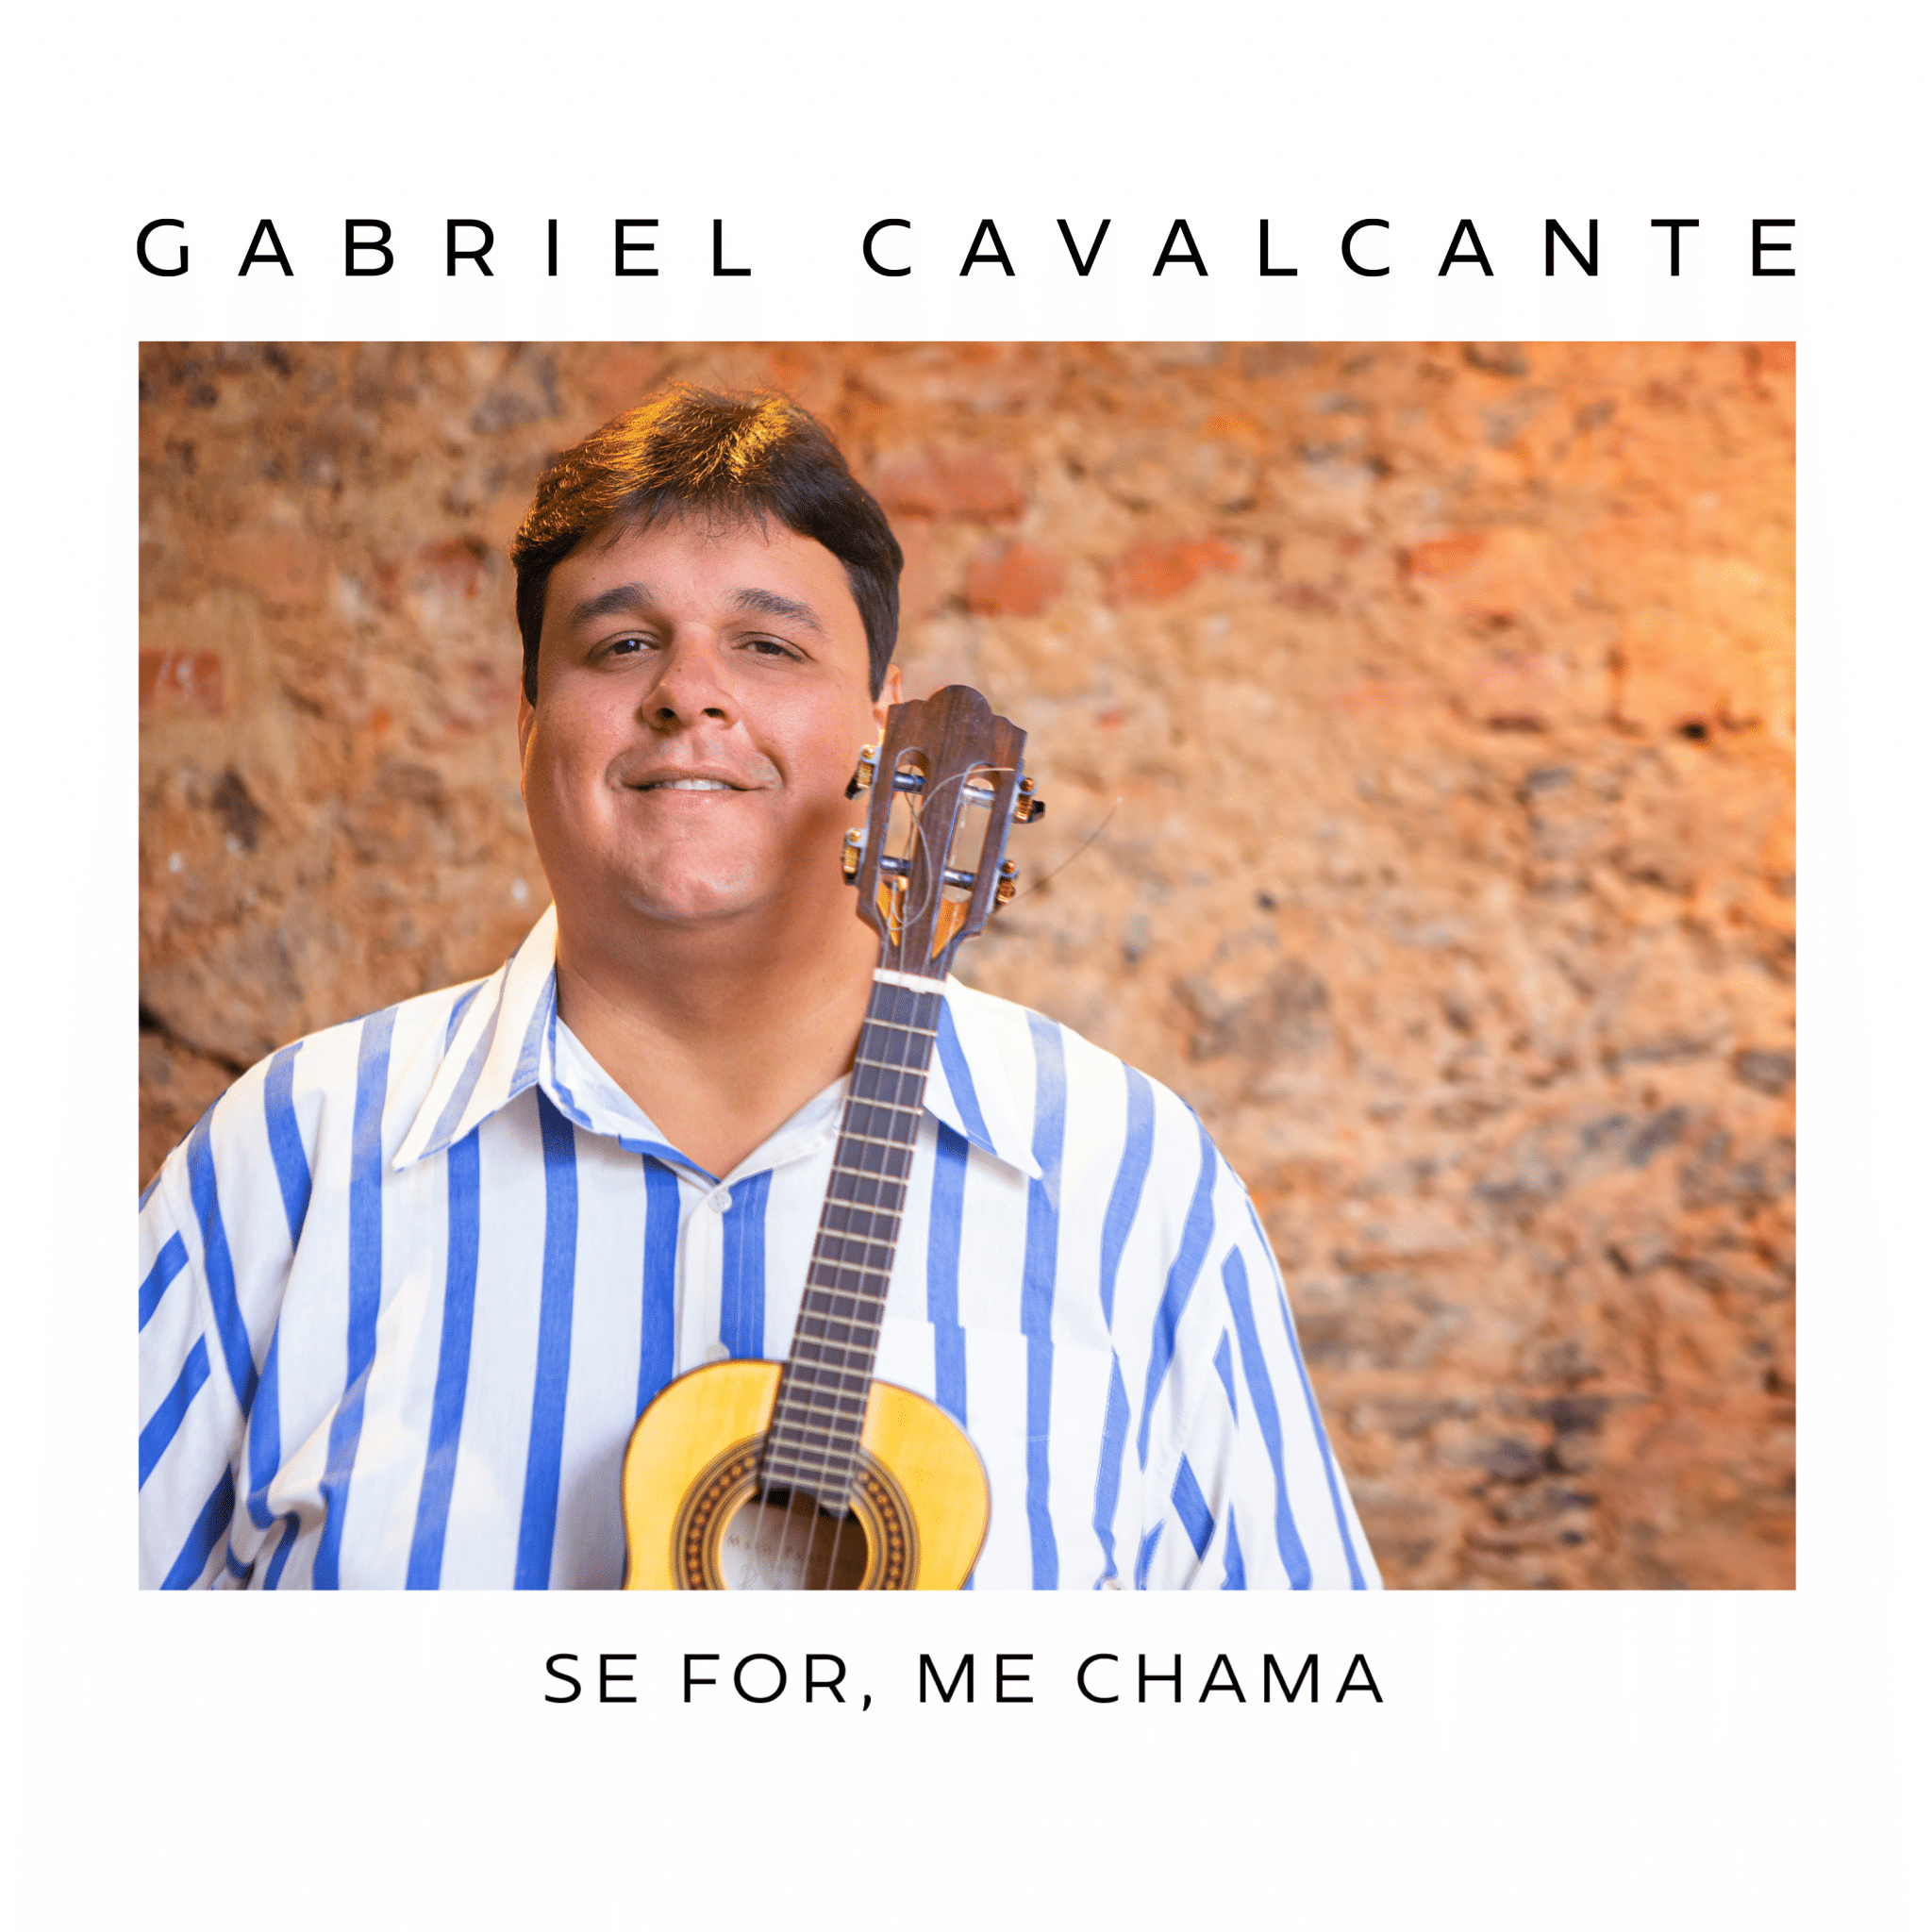 revistaprosaversoearte.com - 'Se for, me chama', segundo álbum de Gabriel da Muda